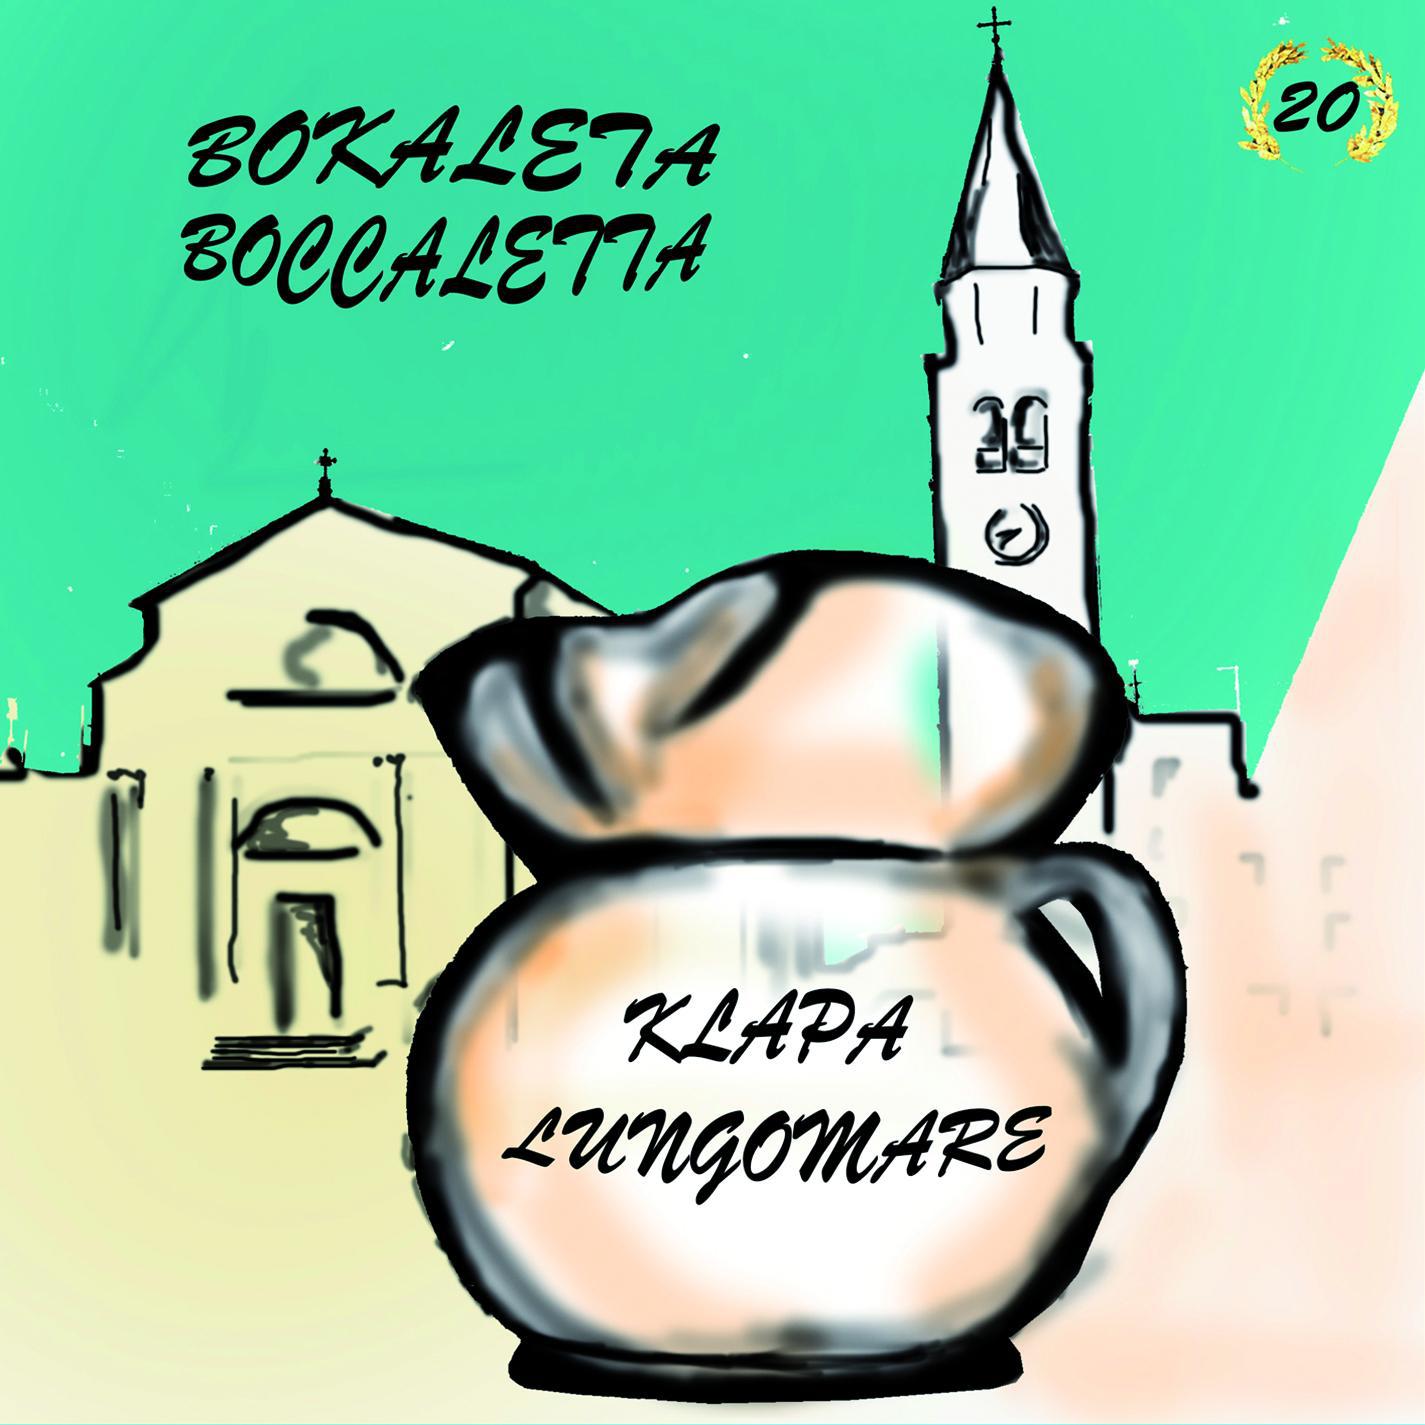 Boccaletta - Bukaleta